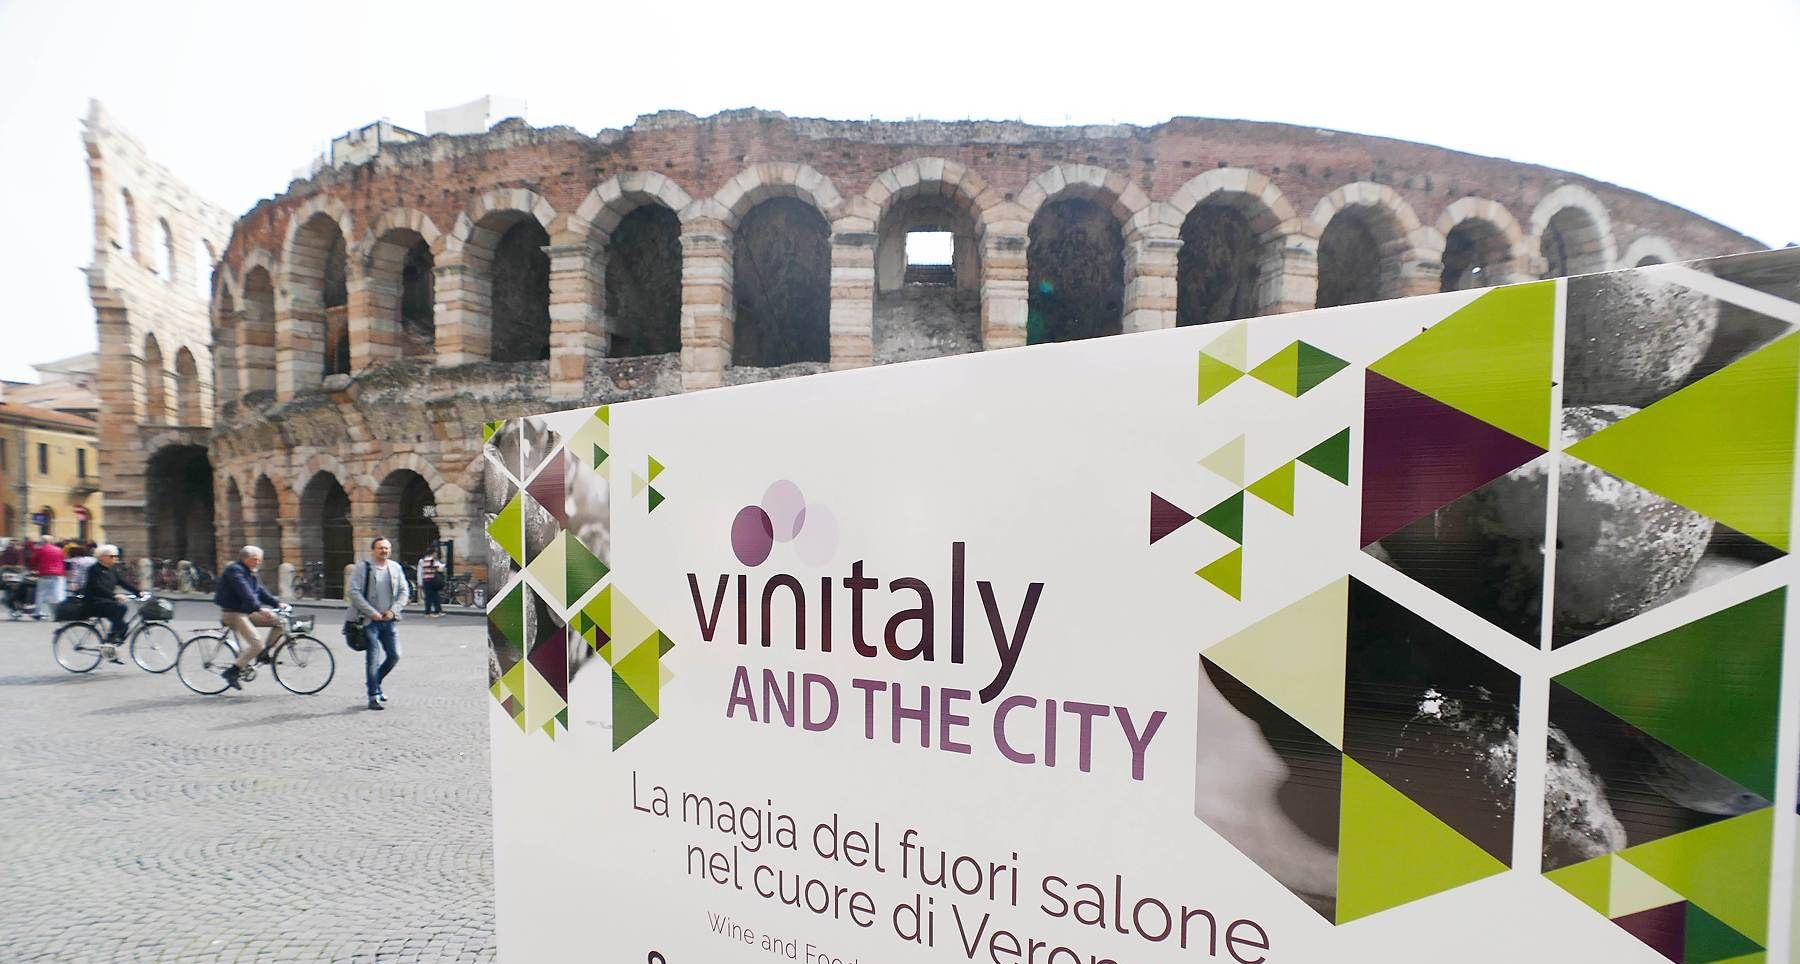 Bagarini napoletani a Vinitaly di Verona: foglio di via obbligatorio per sei persone, Daspo per un veronese